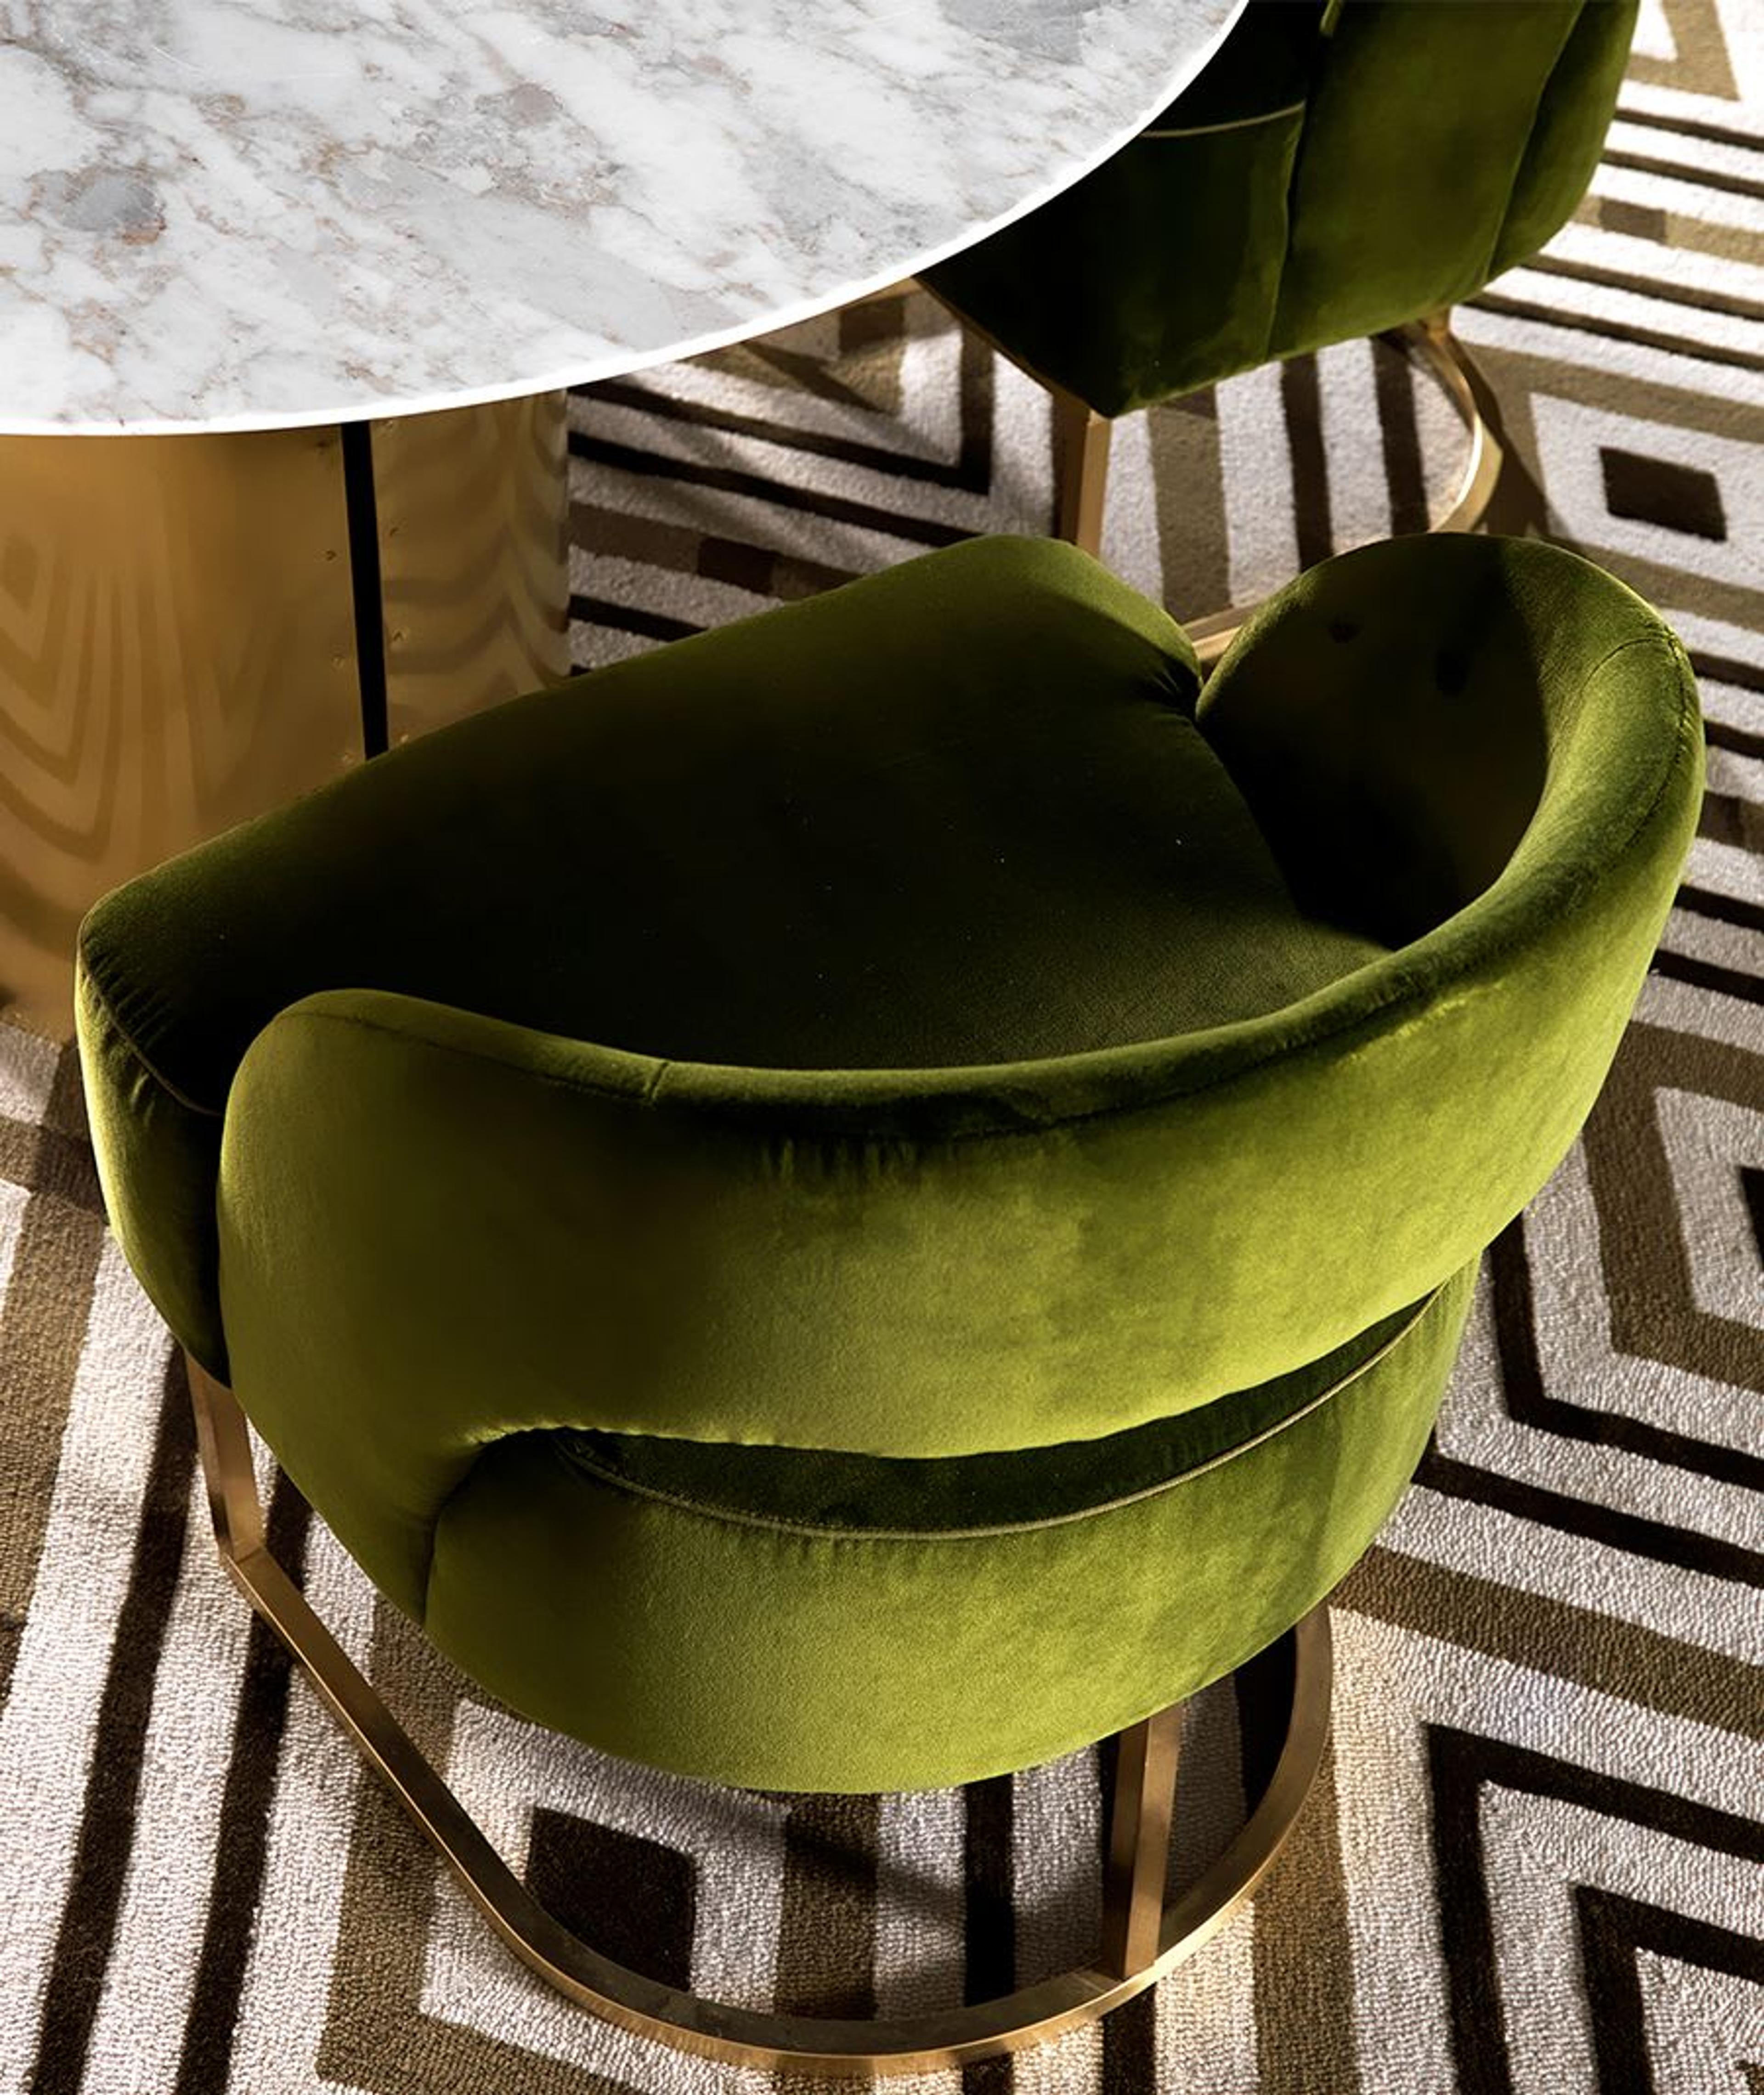 Badari's Art Deco-inspired Danu chair in deep green velvet